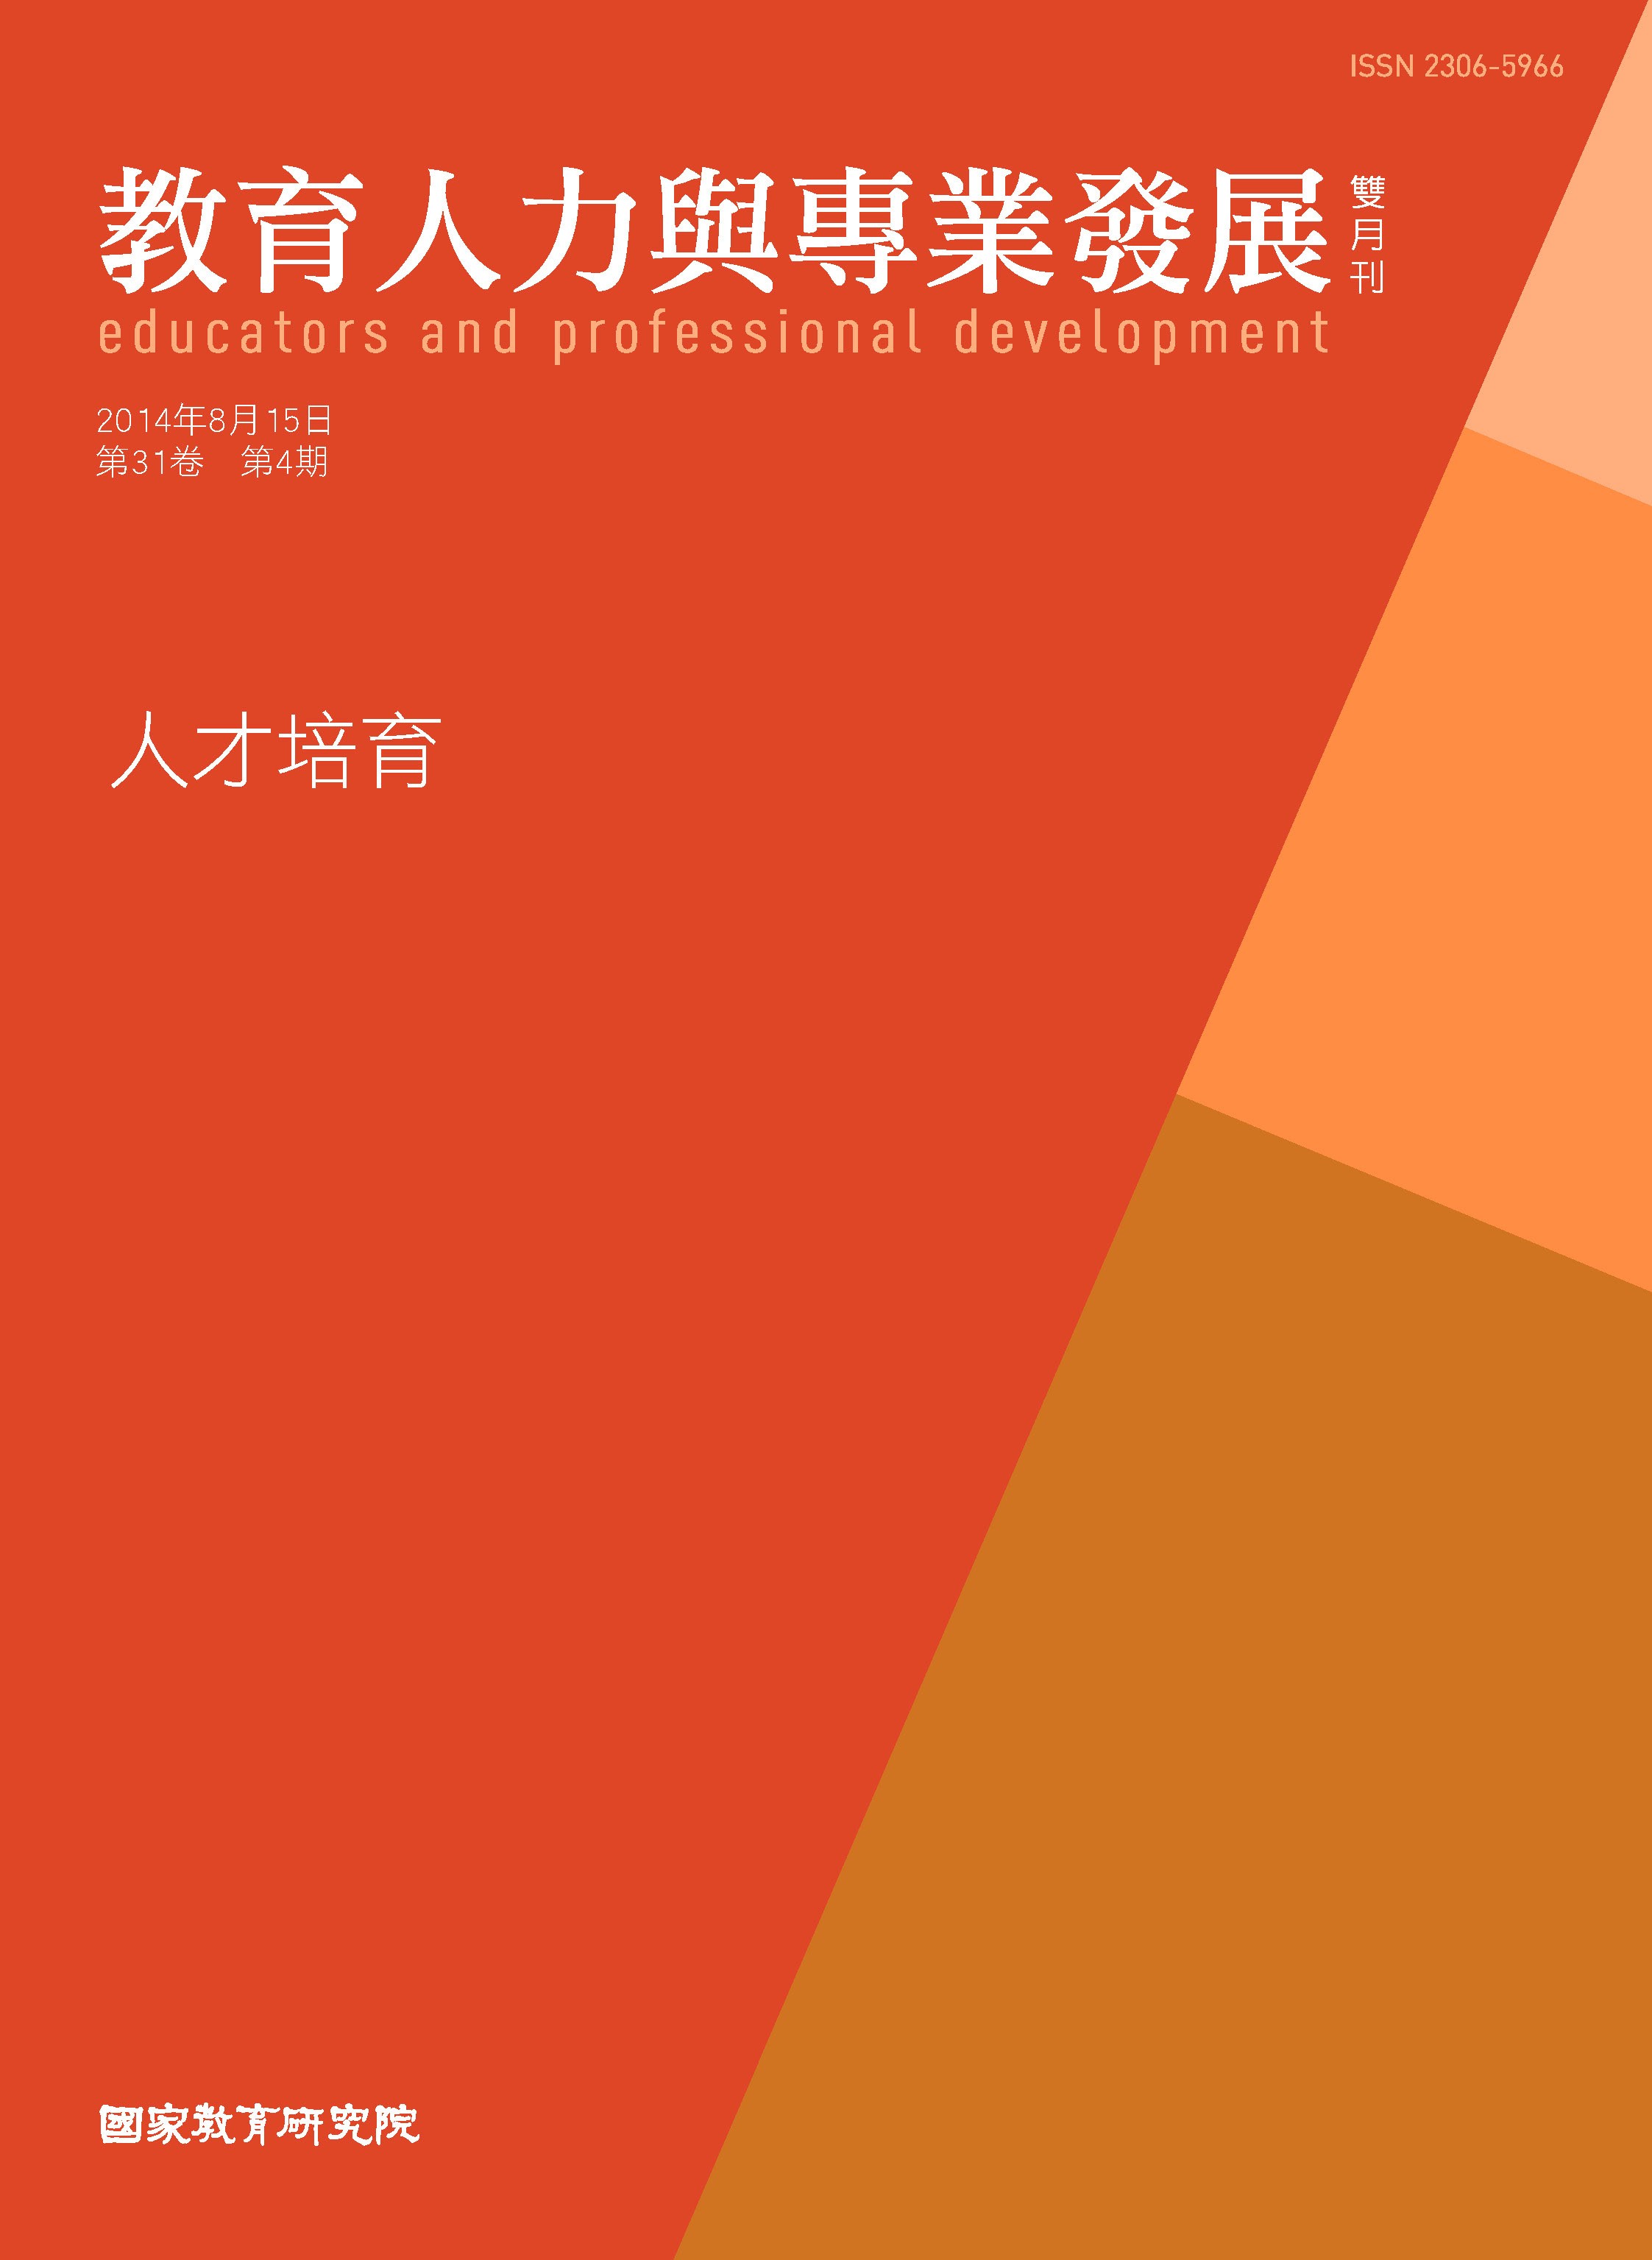 《教育人力與專業發展》雙月刊第31卷第4期發行